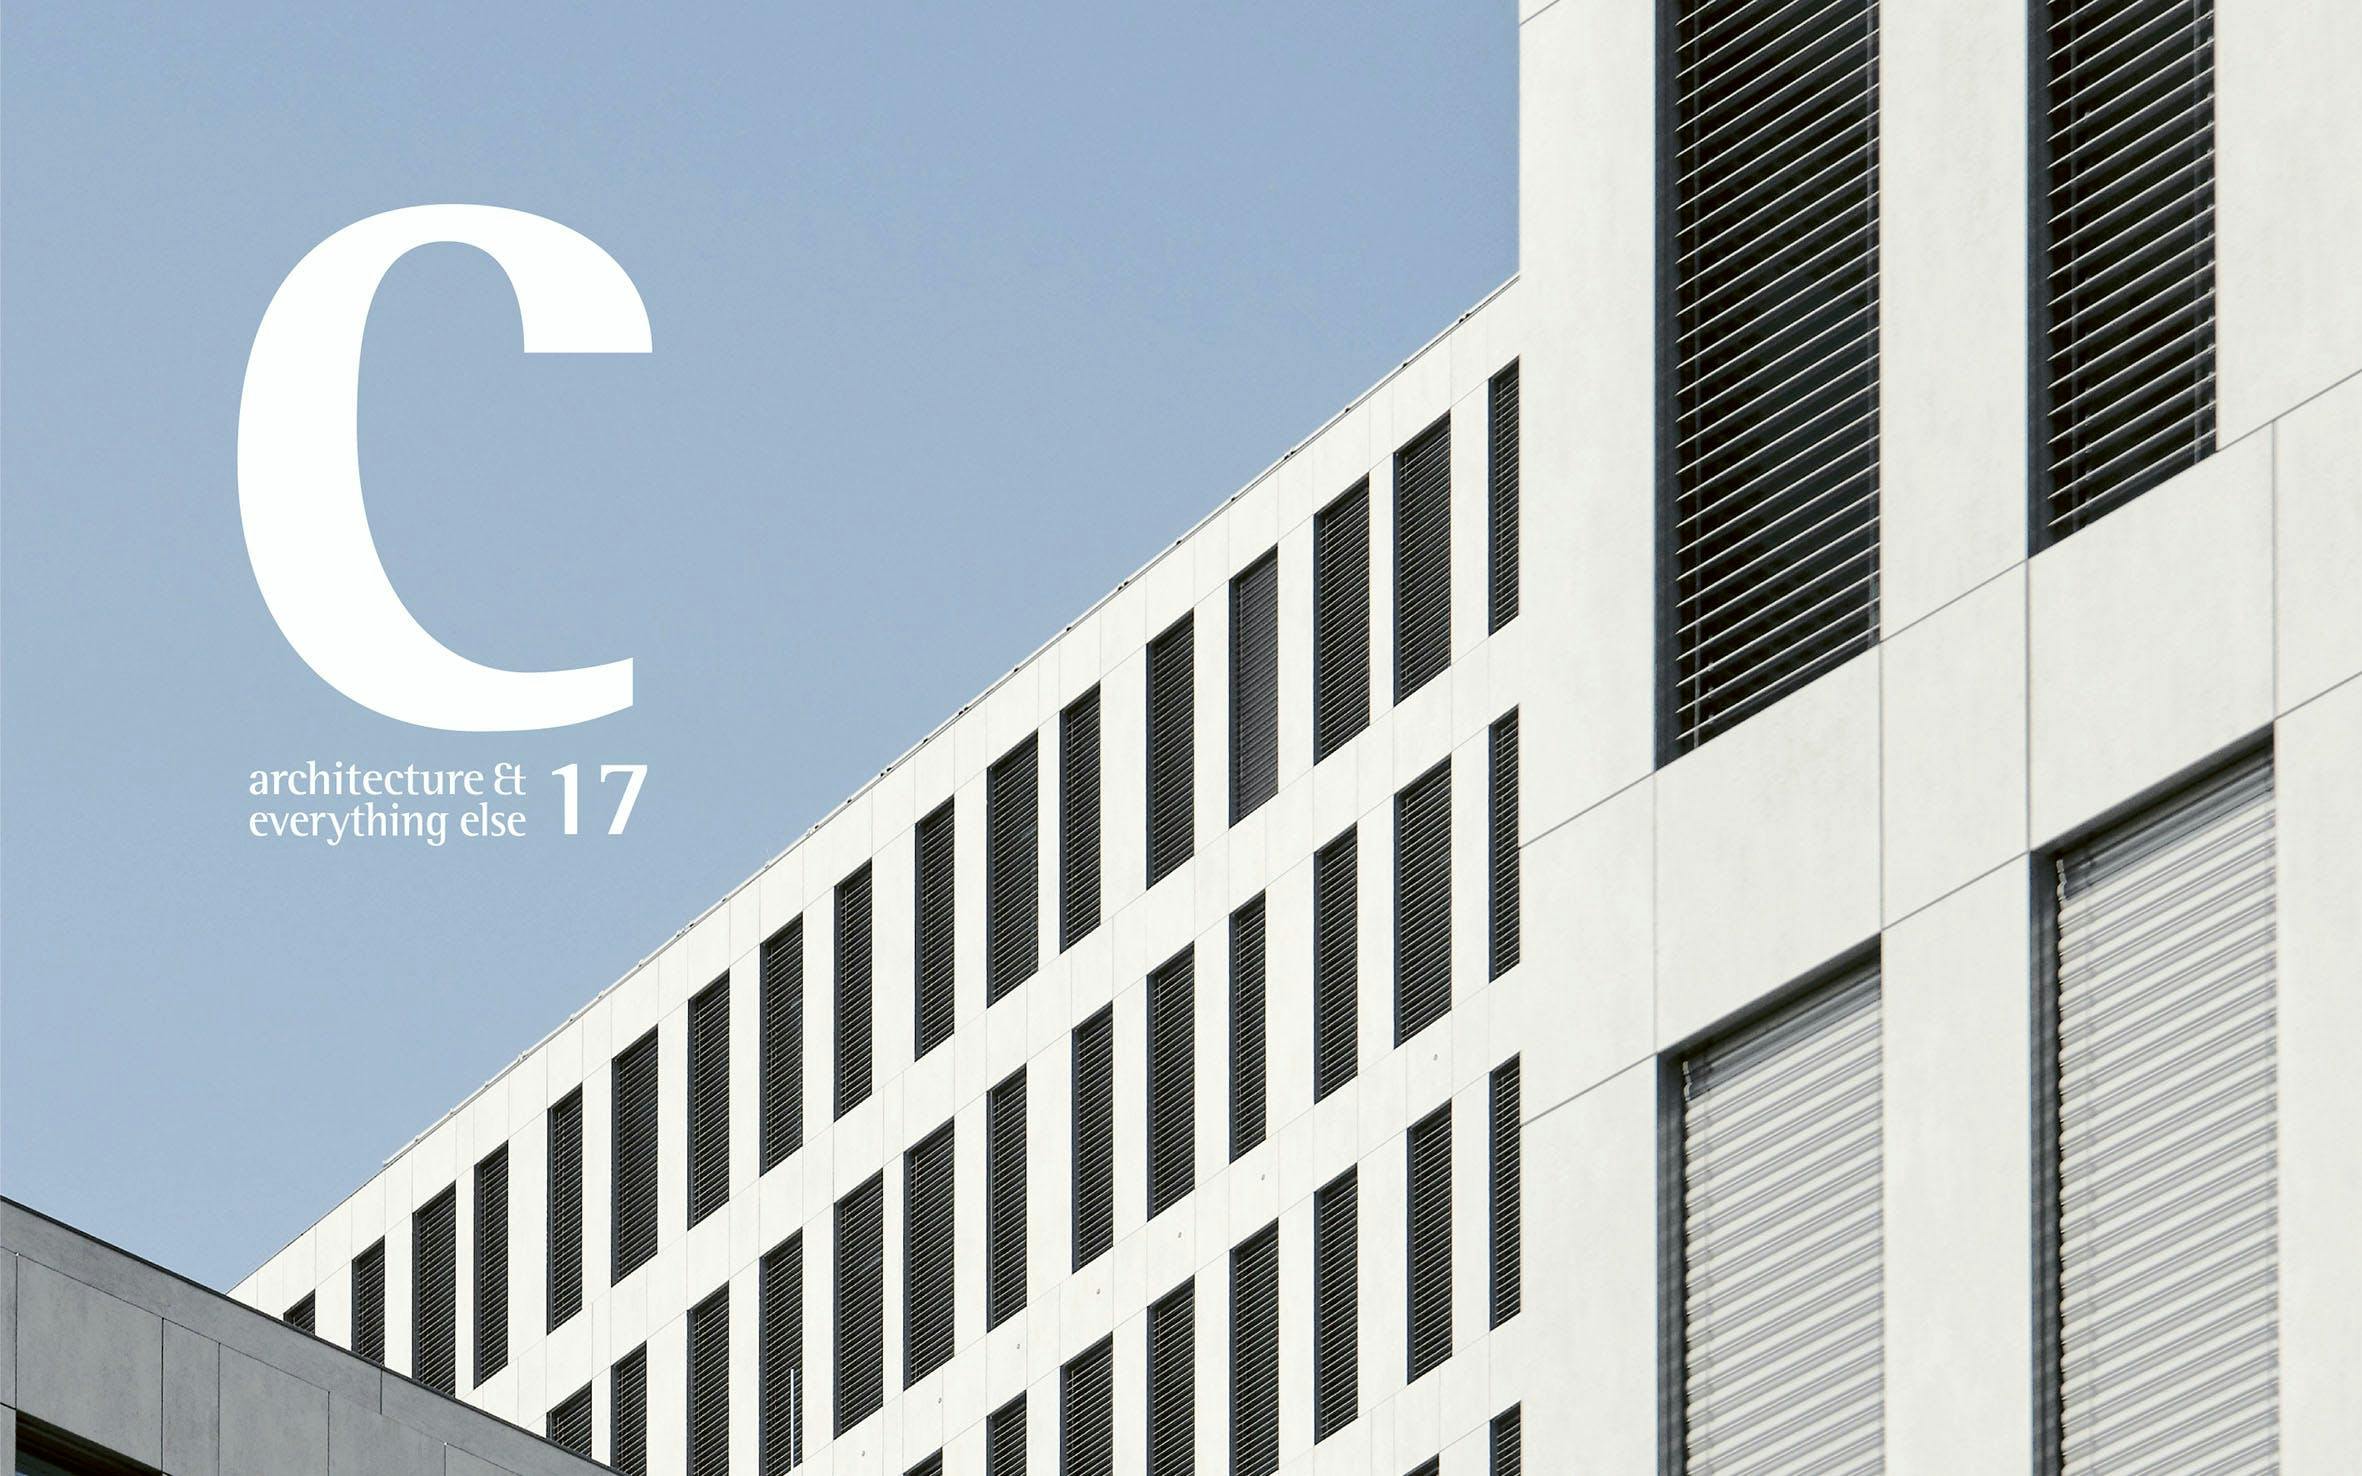 Imagem número 32 da actual secção de Cosentino apresenta “C 17 - Architecture & Everything Else” da Cosentino Portugal